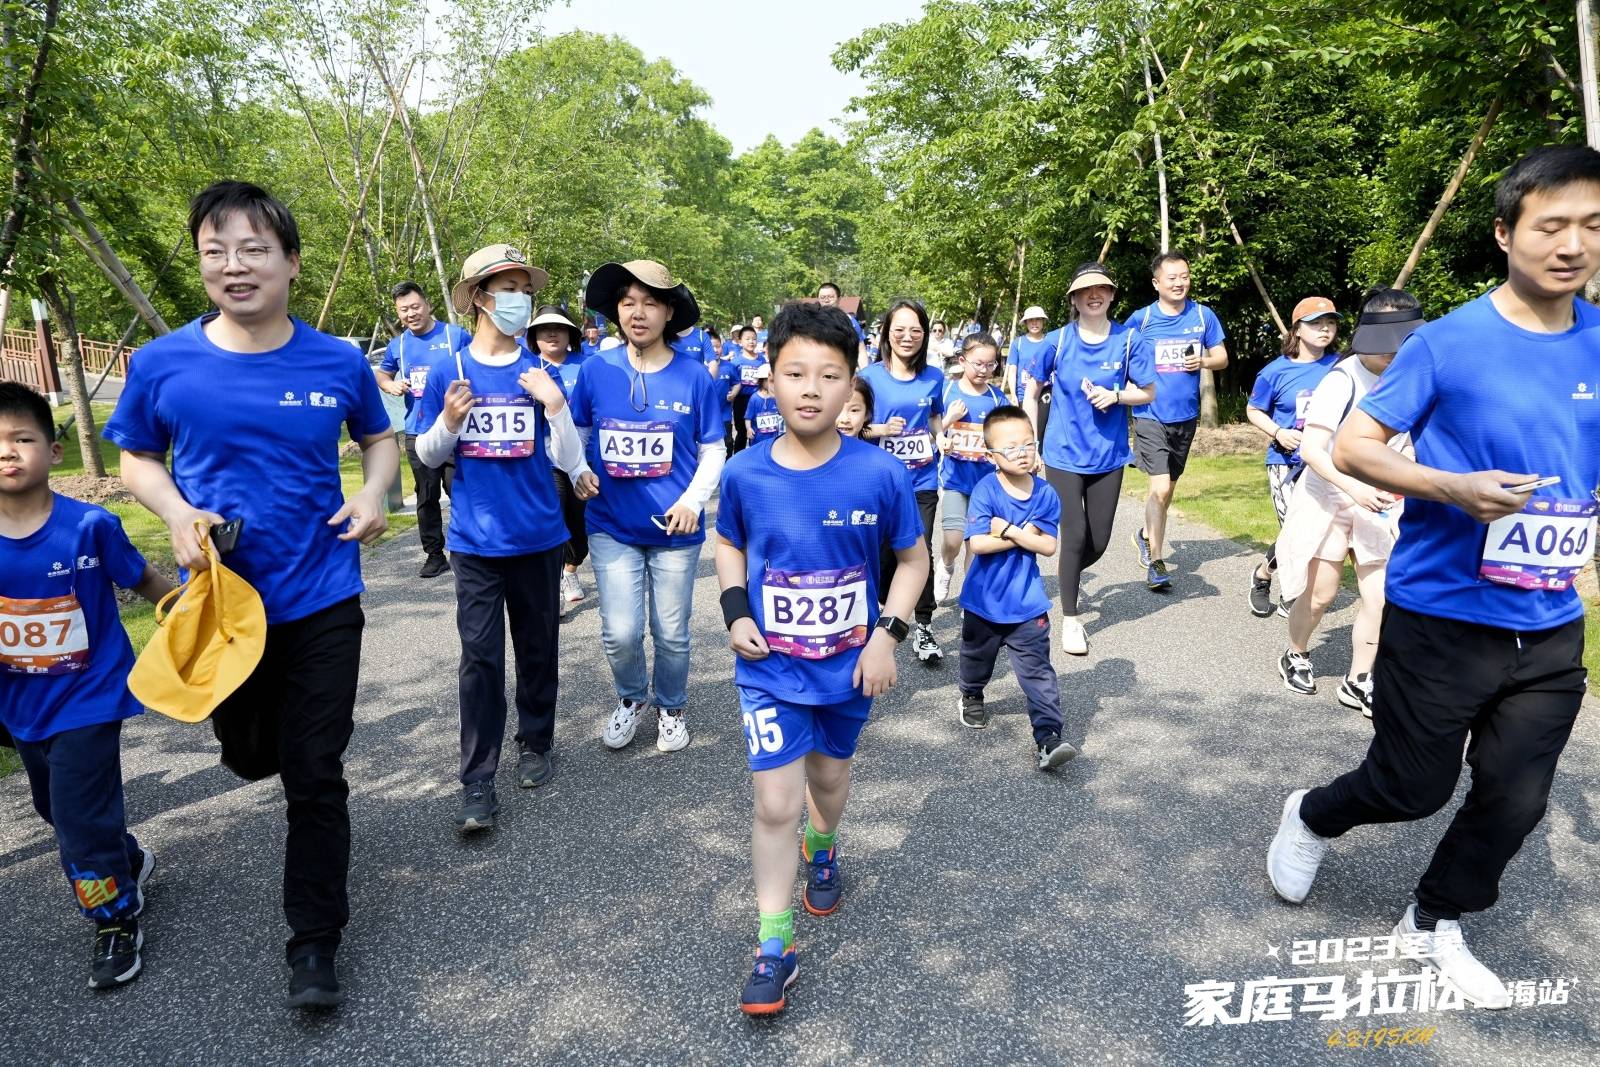 知识马拉松
:800组家庭齐聚顾村公园，圣象家庭马拉松上海站开赛